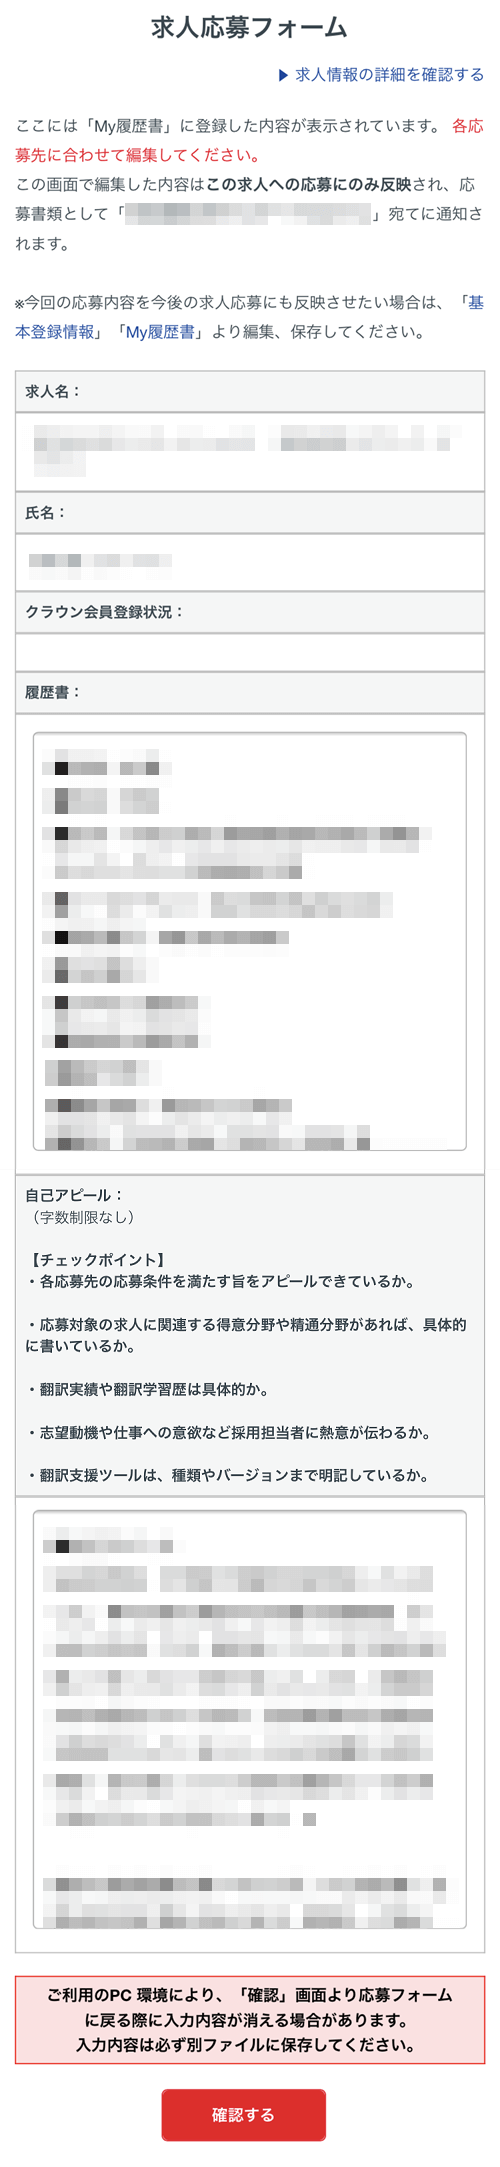 翻訳者ネットワーク「アメリア」求人応募フォーム画面